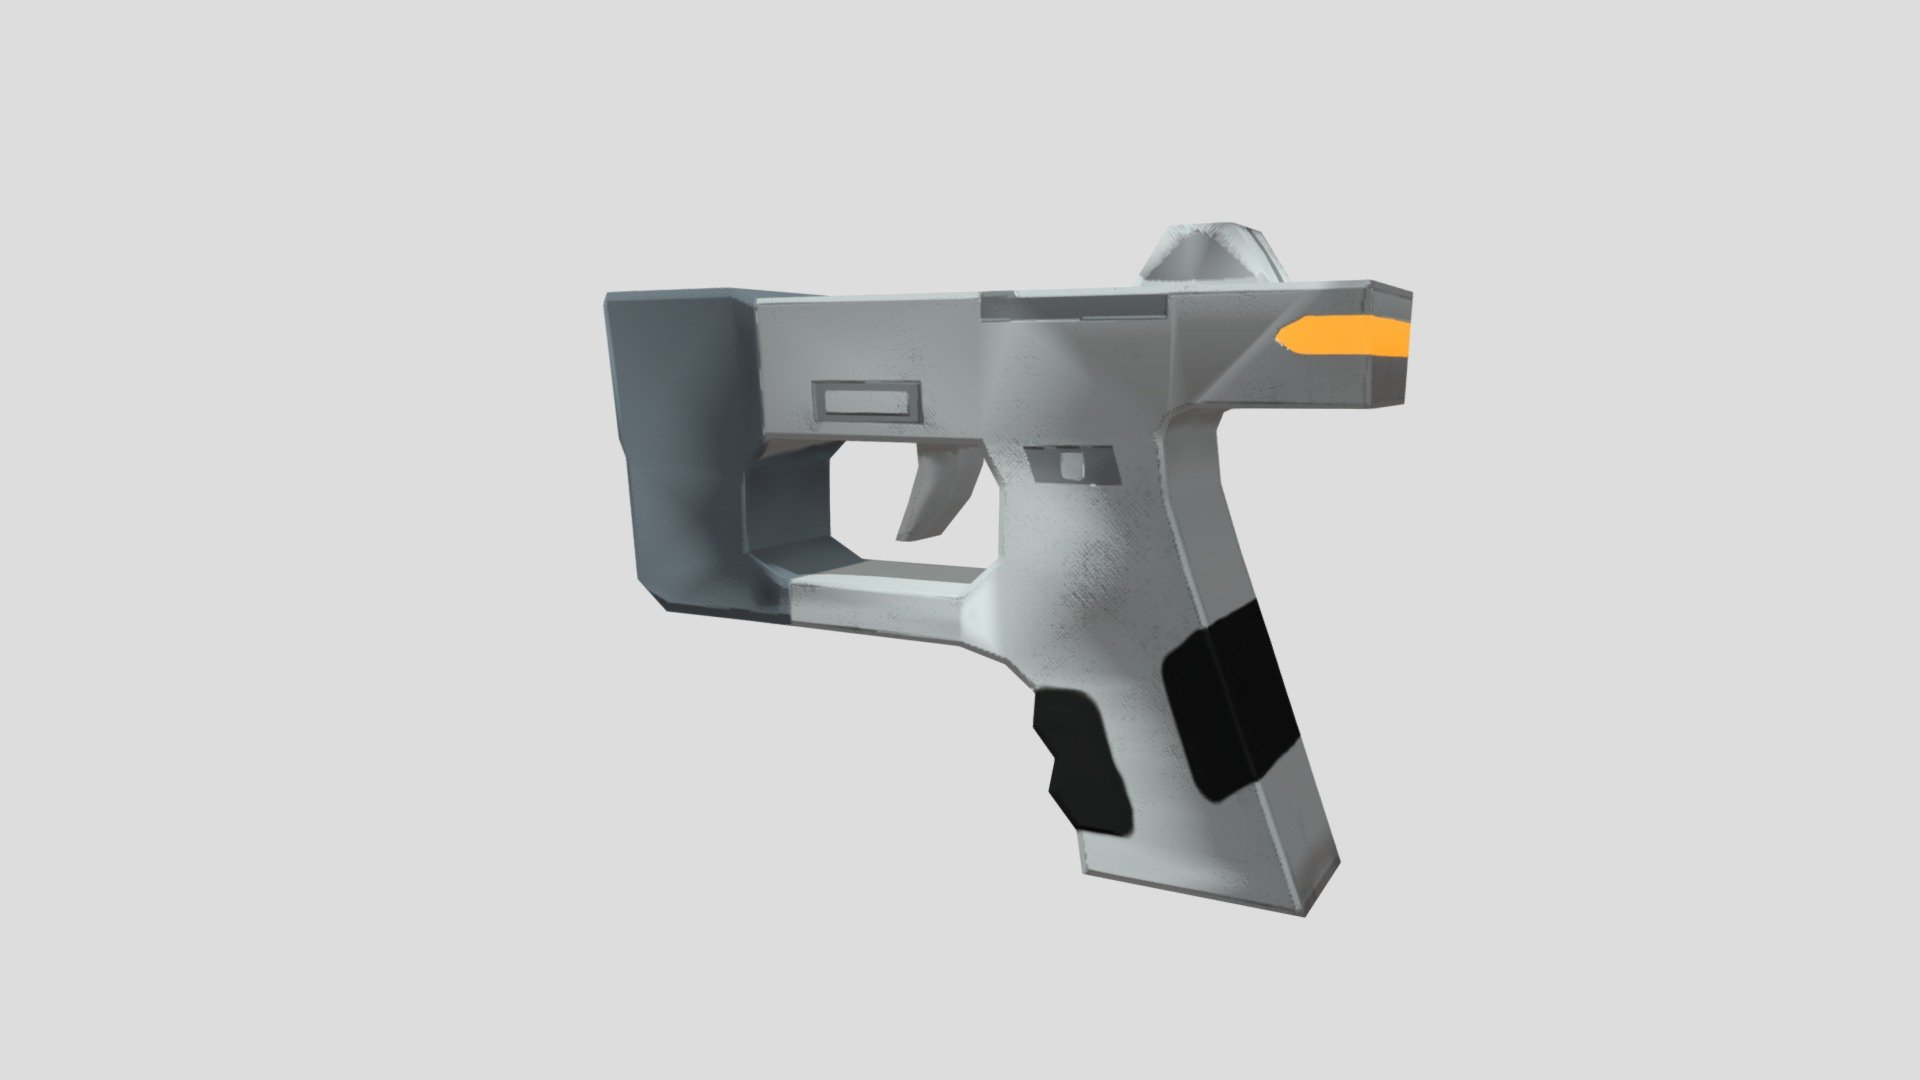 futuristic gun - 3D model by nicolasburns98 [bd5ff79] - Sketchfab